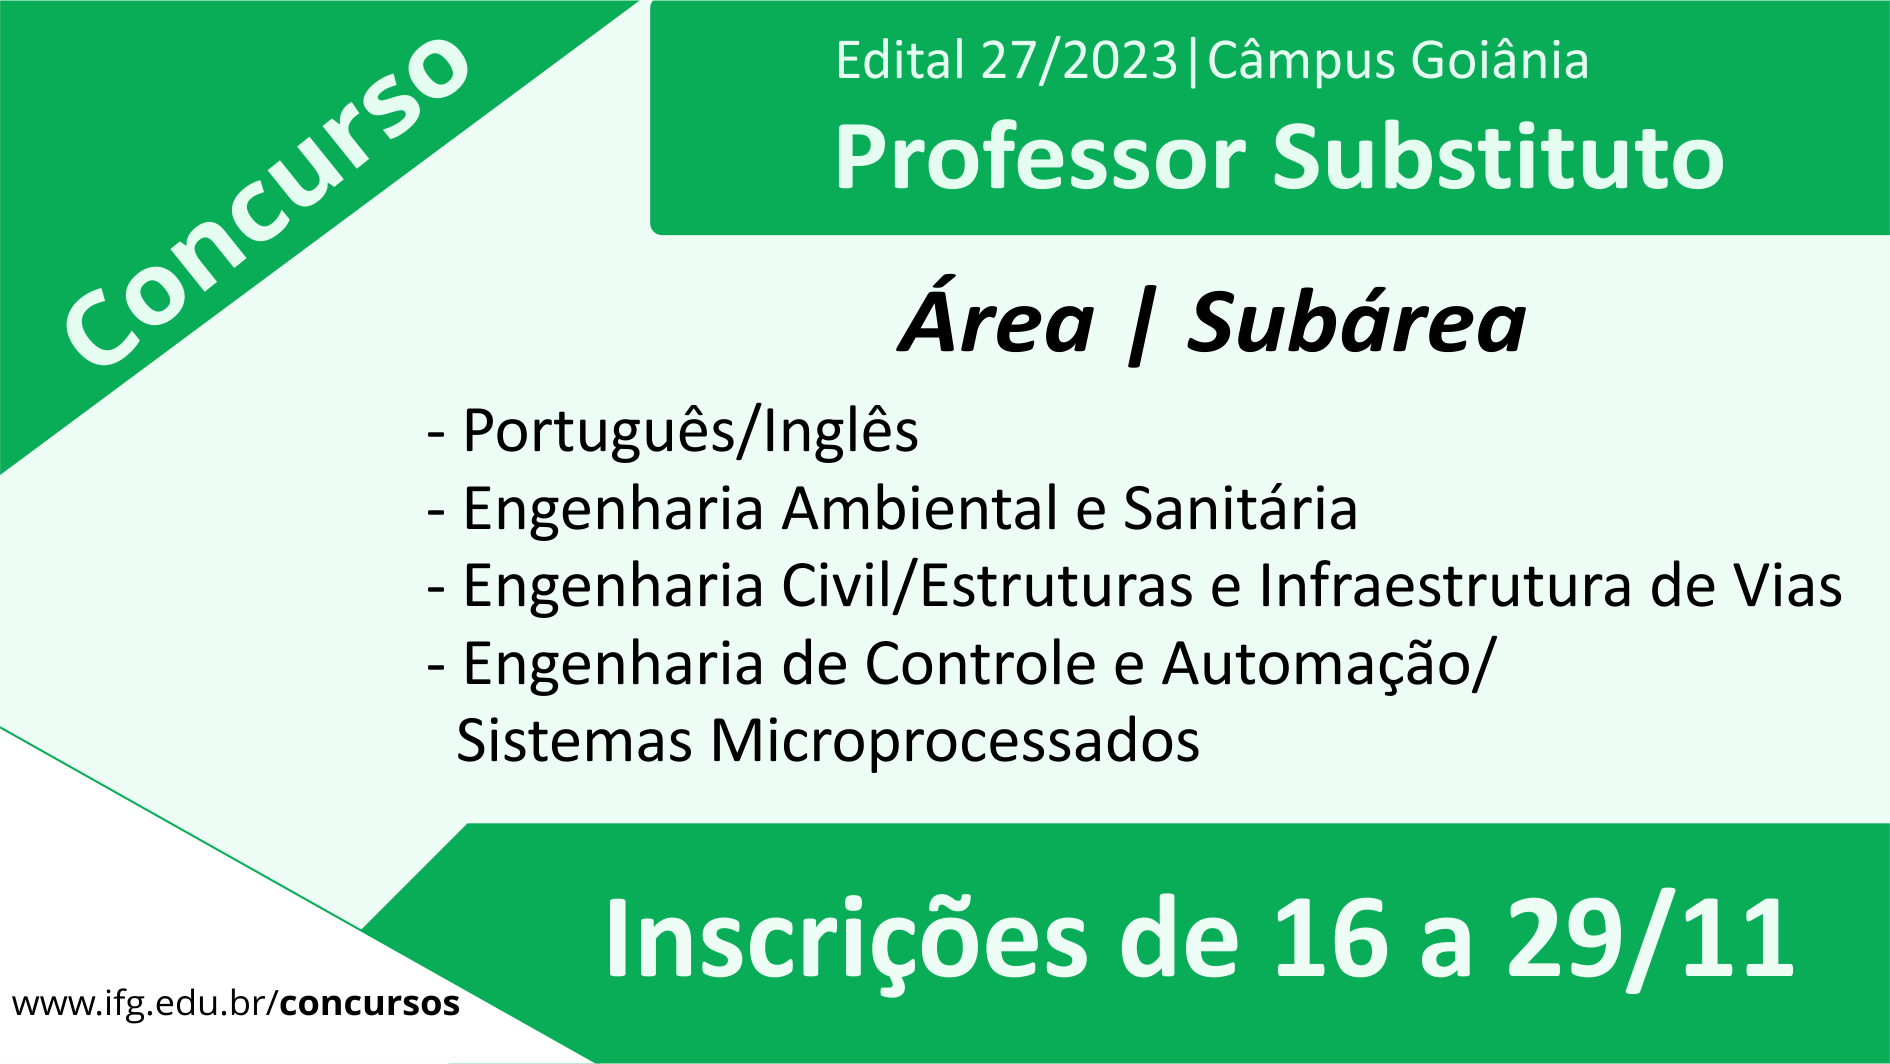 Câmpus Goiânia publicou o edital nº 27/2023 para seleção de professores substitutos.